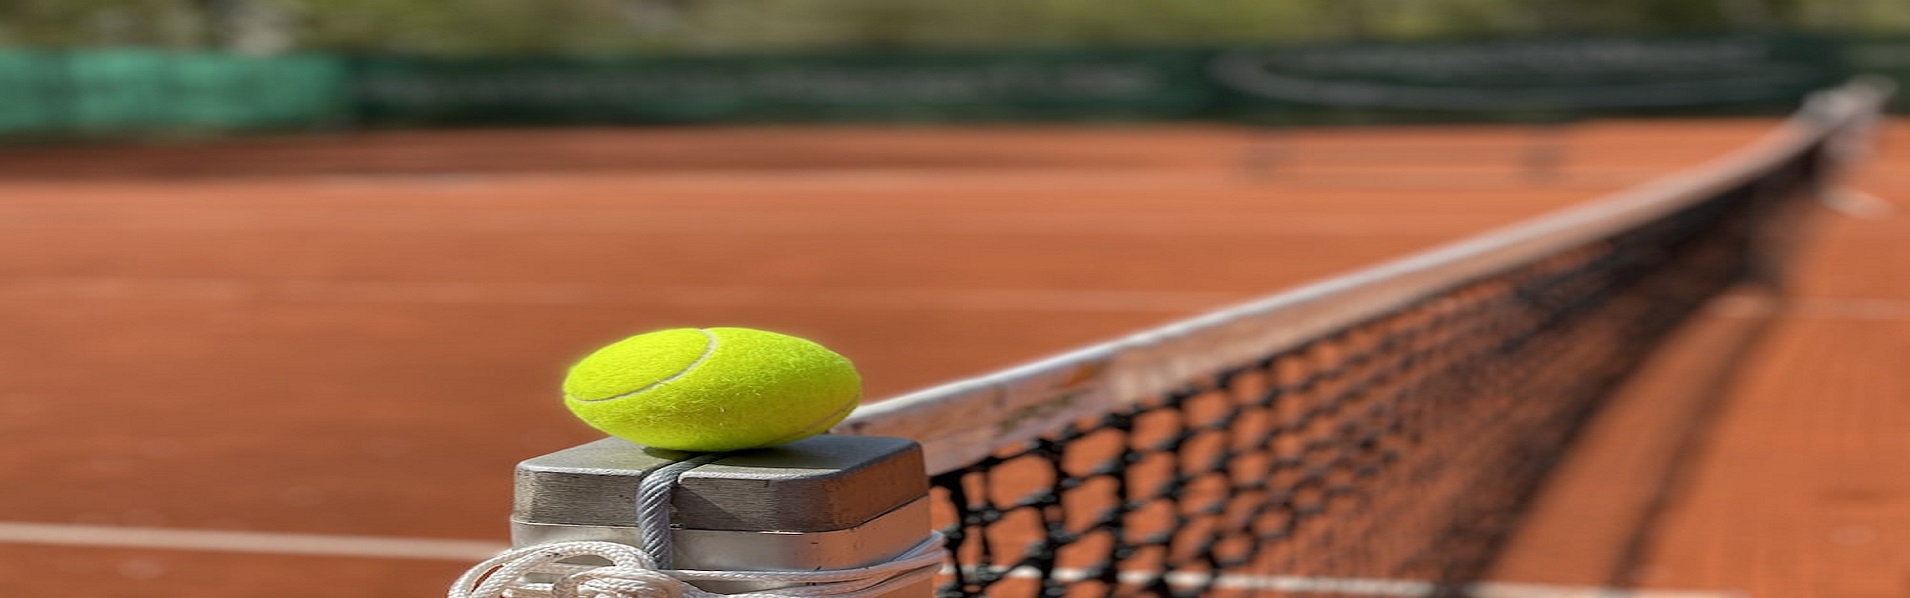 Tennis Sokken - 128 - 39-42 - 44